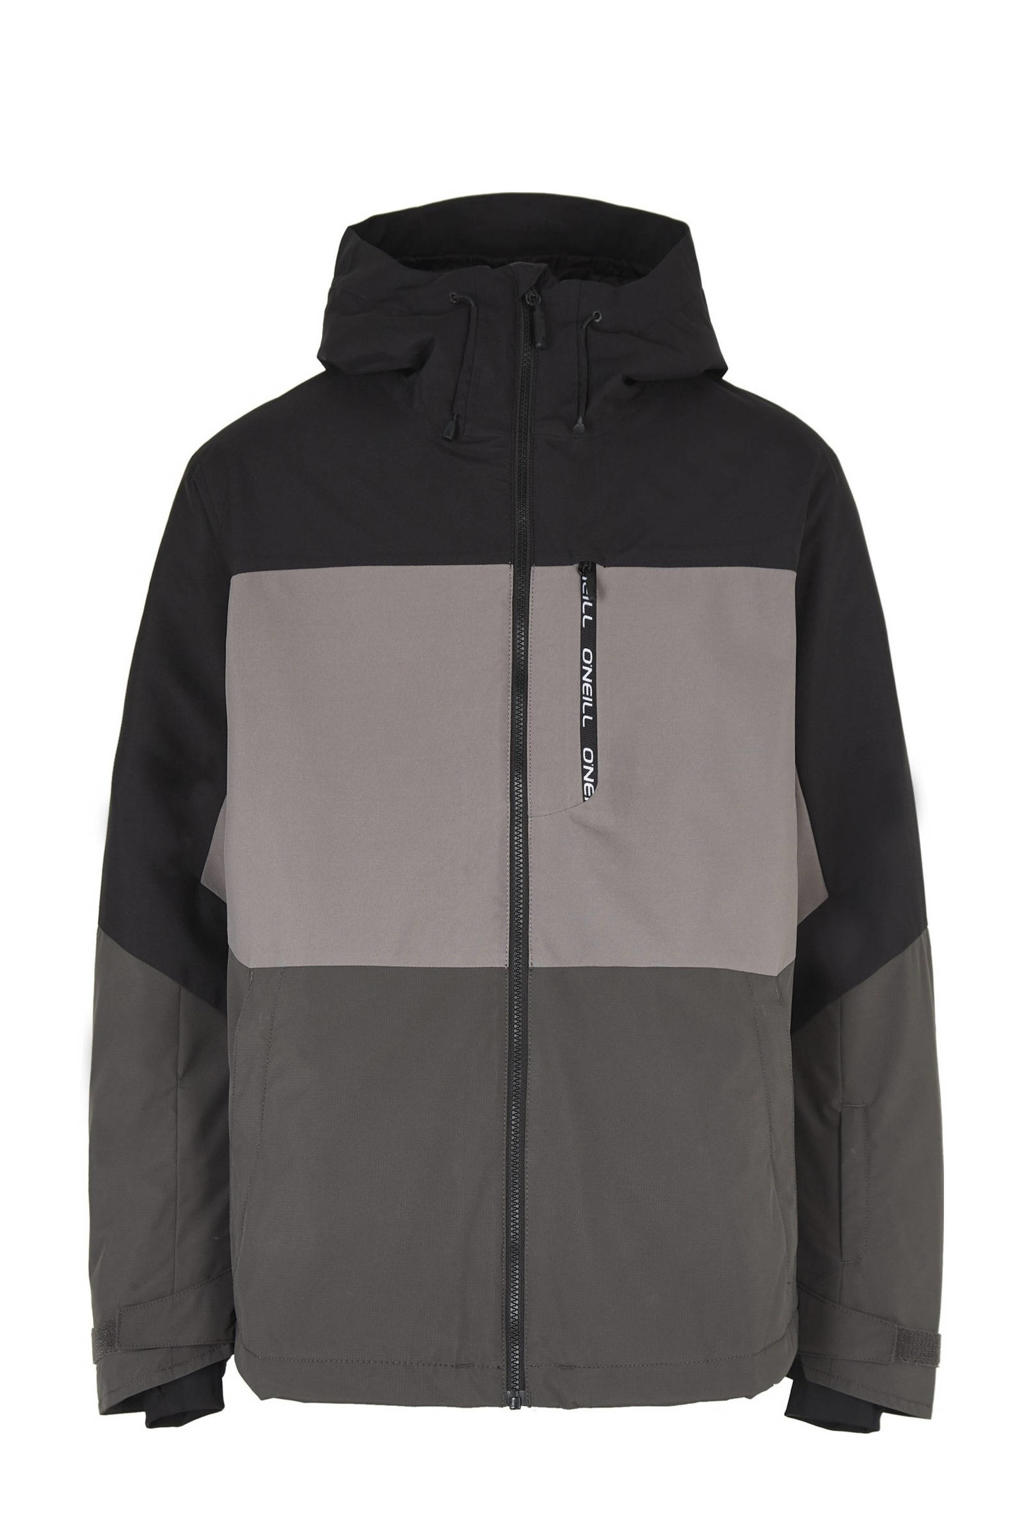 Zwart, grijs en lichtgrijze heren O'Neill ski-jack Carbonite van polyester met meerkleurige print, capuchon en ritssluiting